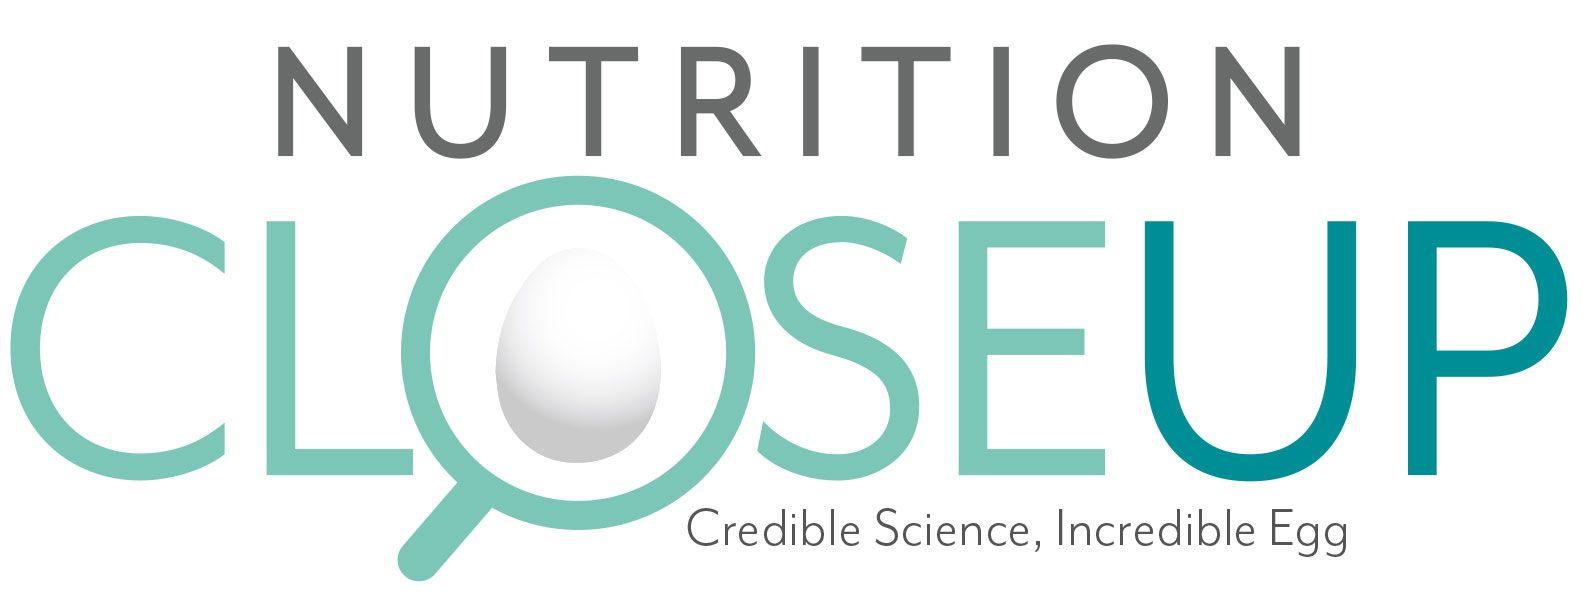 Egg Vitamin Logo - Nutrition News | Egg Nutrition Center